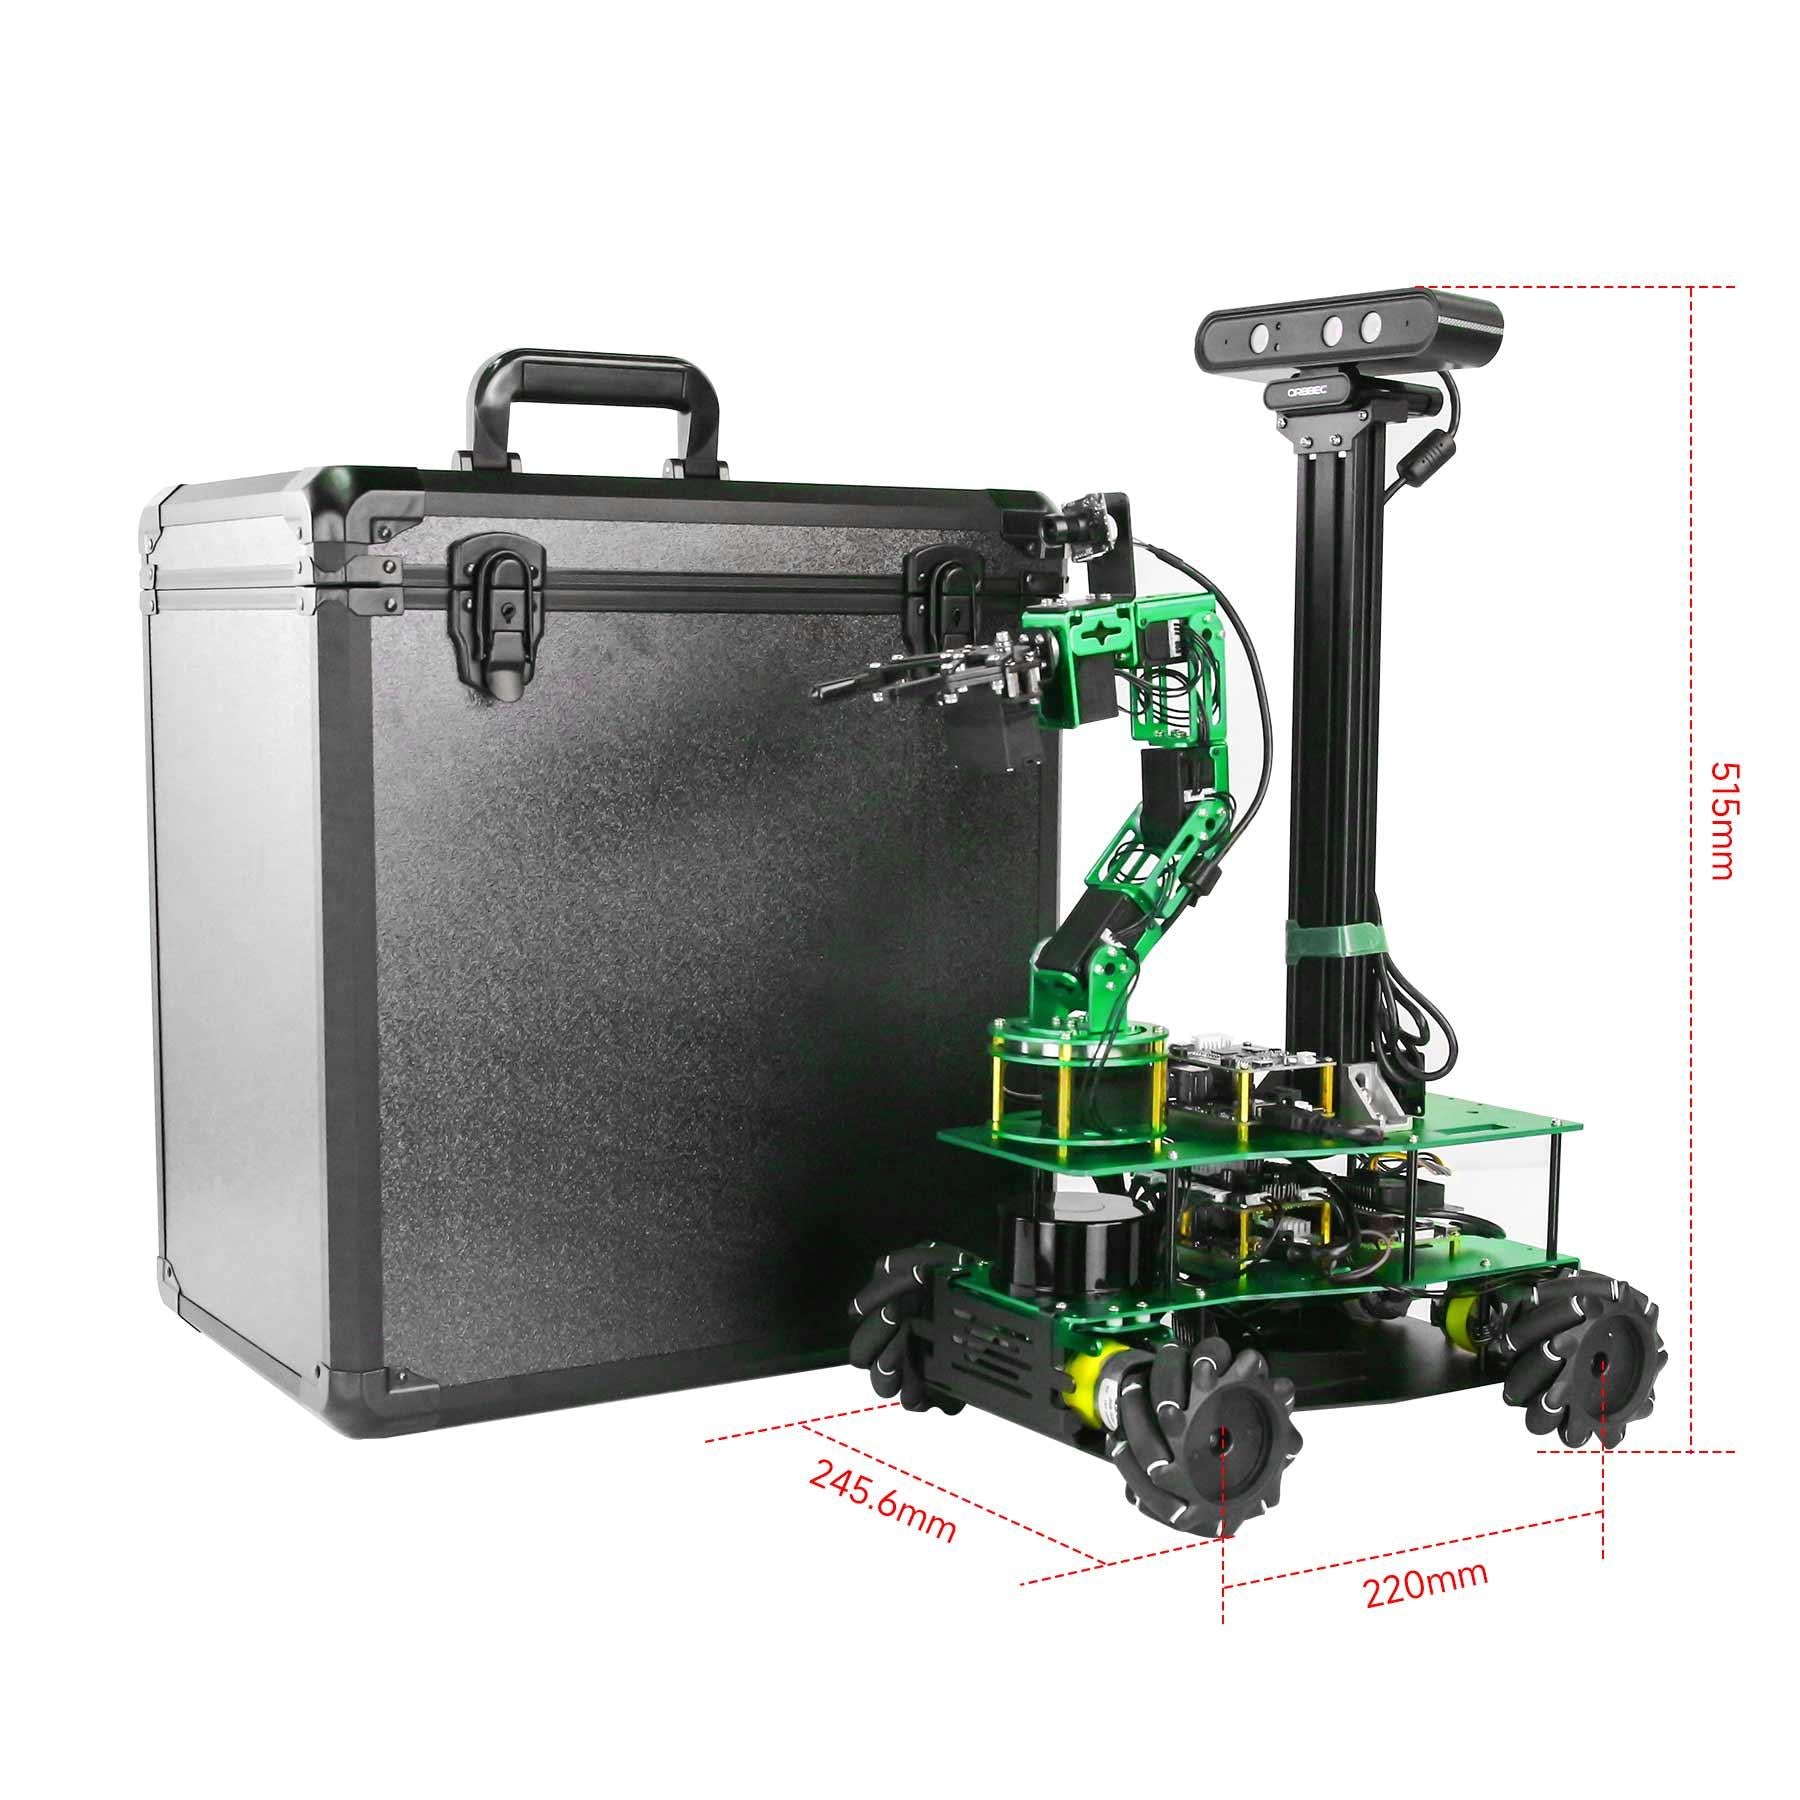 ROSMASTER X3 PLUS ROS STEM Education Python Programming Robot for Jetson NANO 4GB/Xavier NX/TX2 NX/RaspberryPi 4B